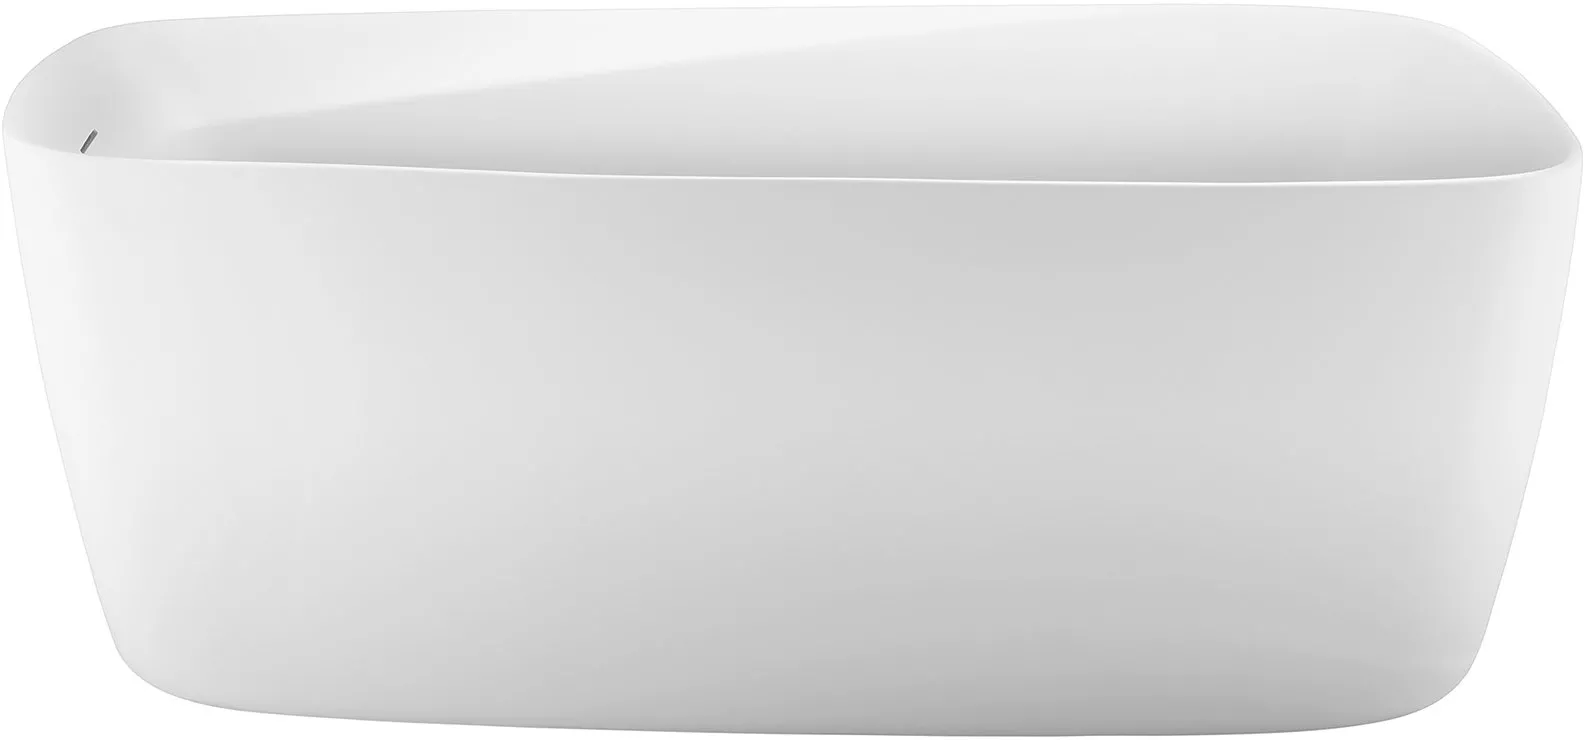 Акриловая ванна Aquanet Trend 170x80, белая 260046 00260046 - фото 1